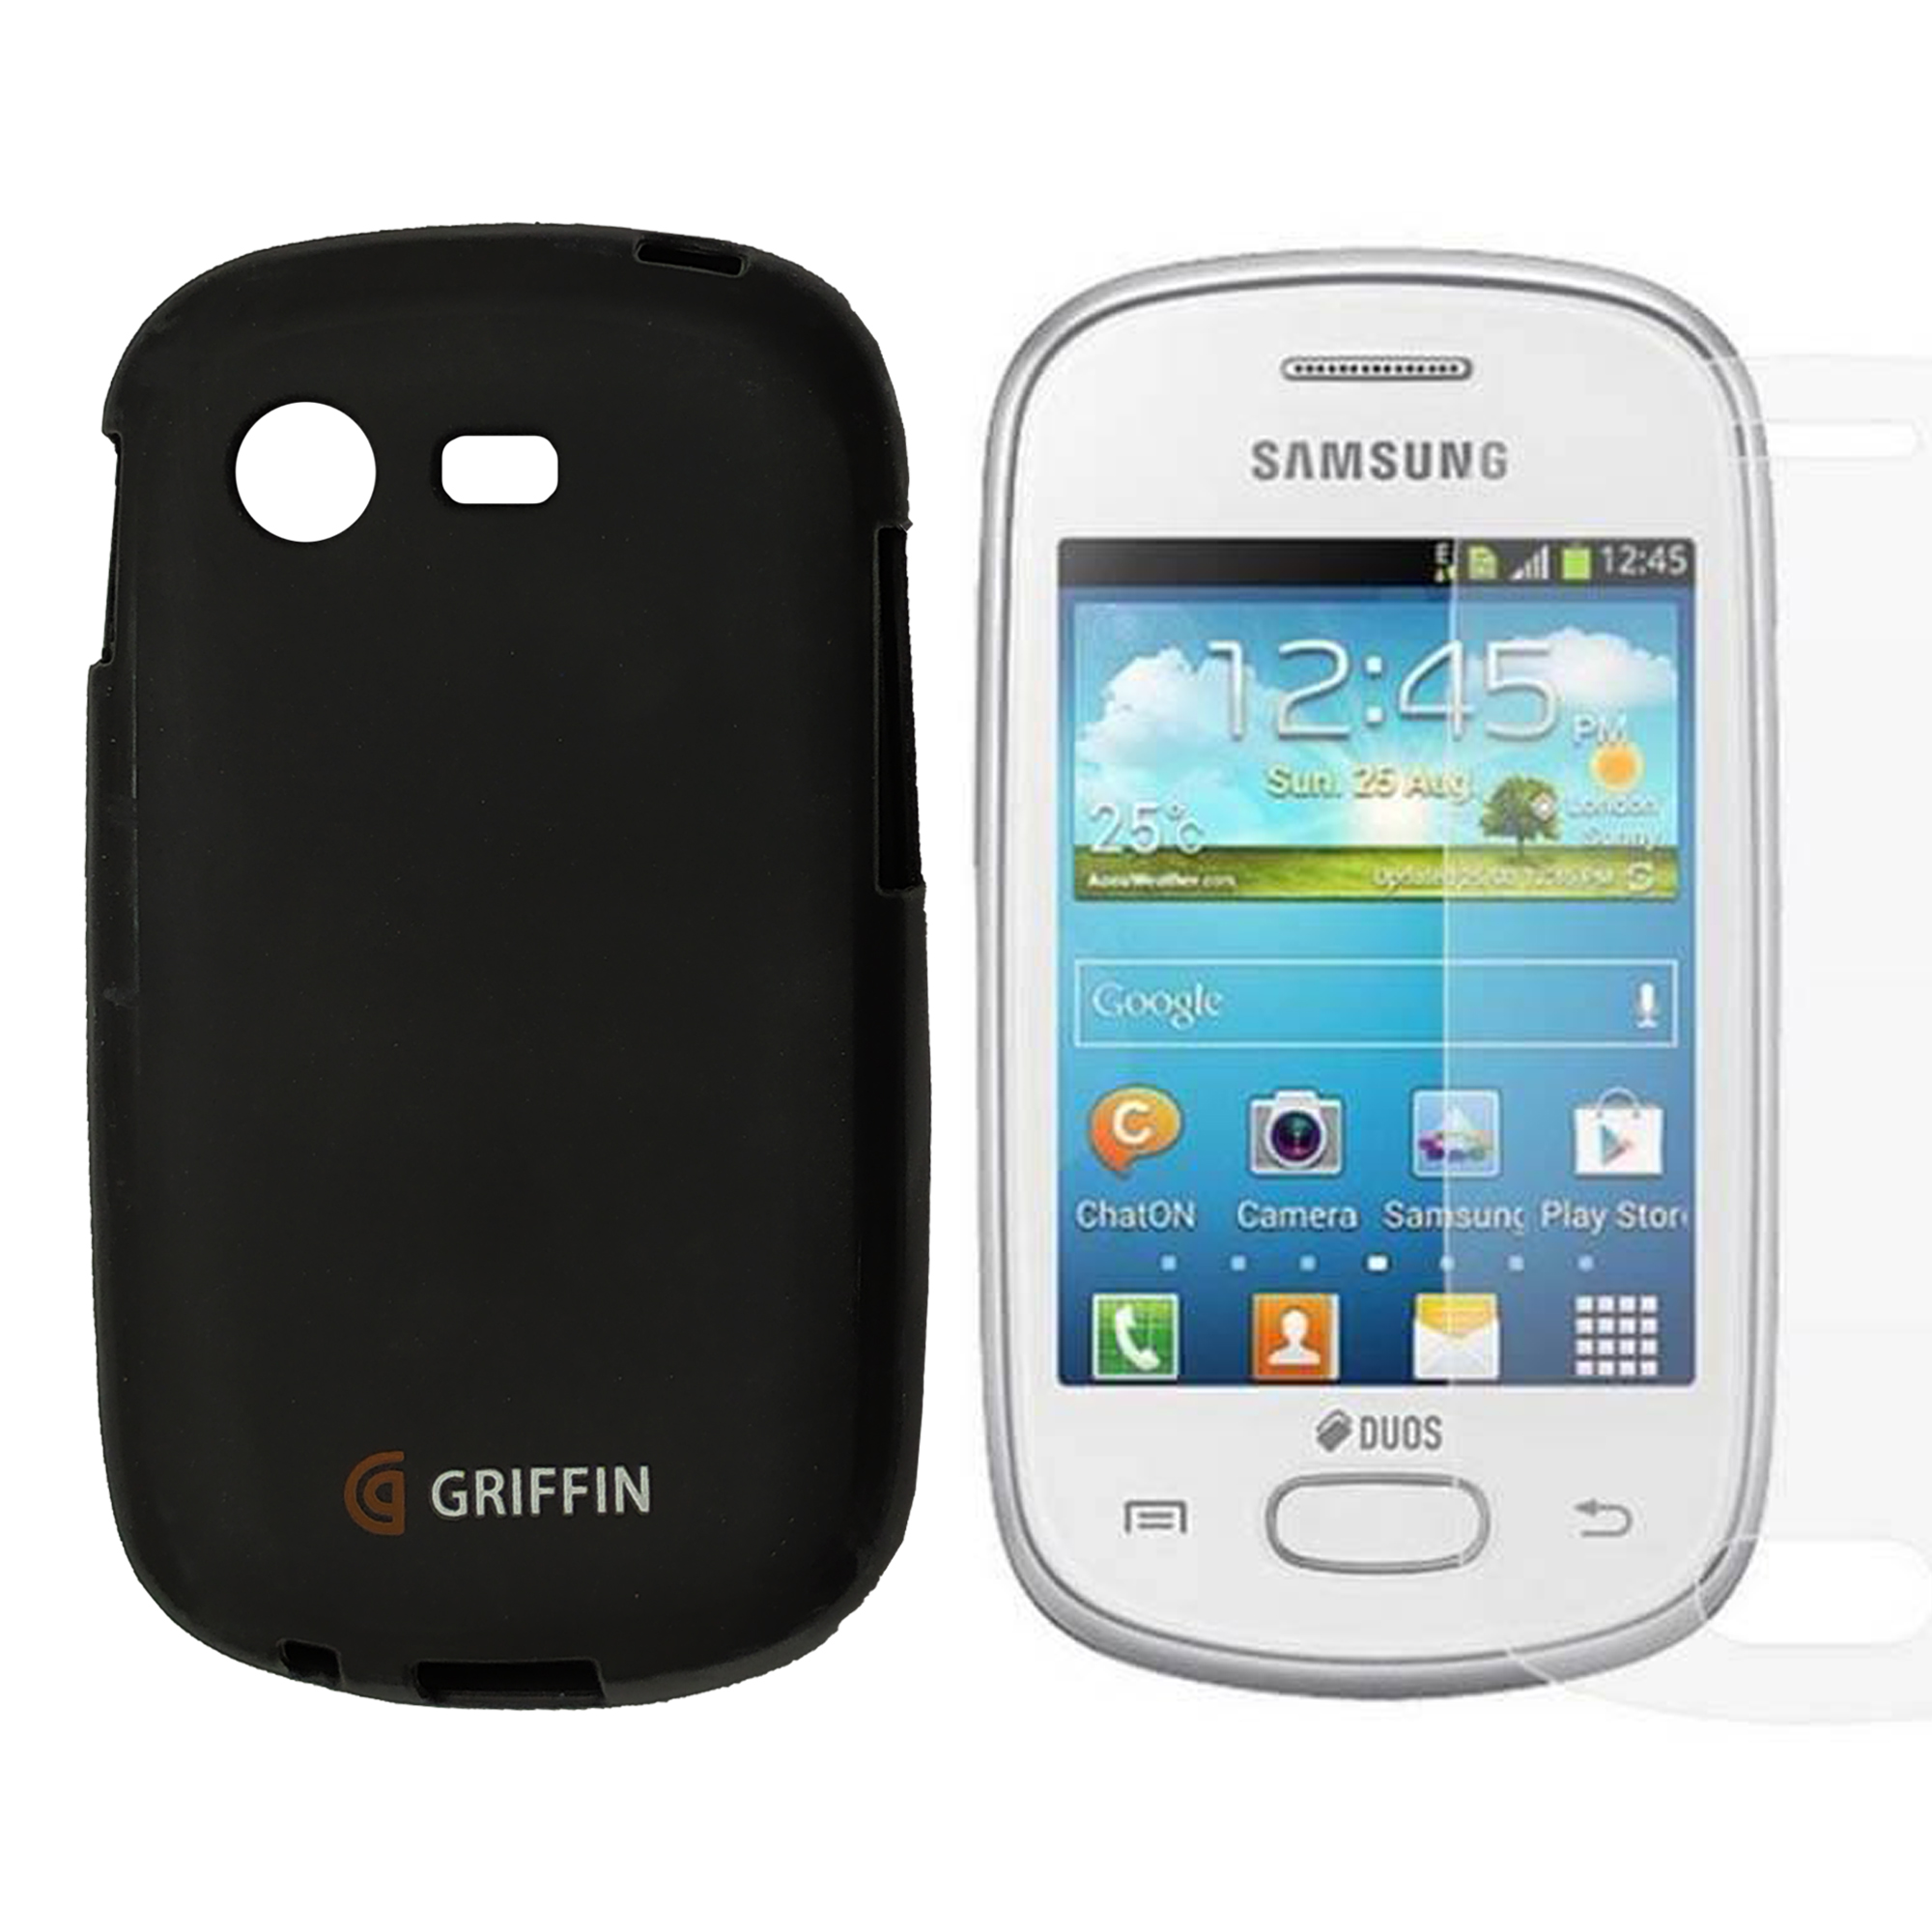 کاور گریفین کد Mc-01 مناسب برای گوشی موبایل سامسونگ Galaxy Star / S5282 به همراه محافظ صفحه نمایش